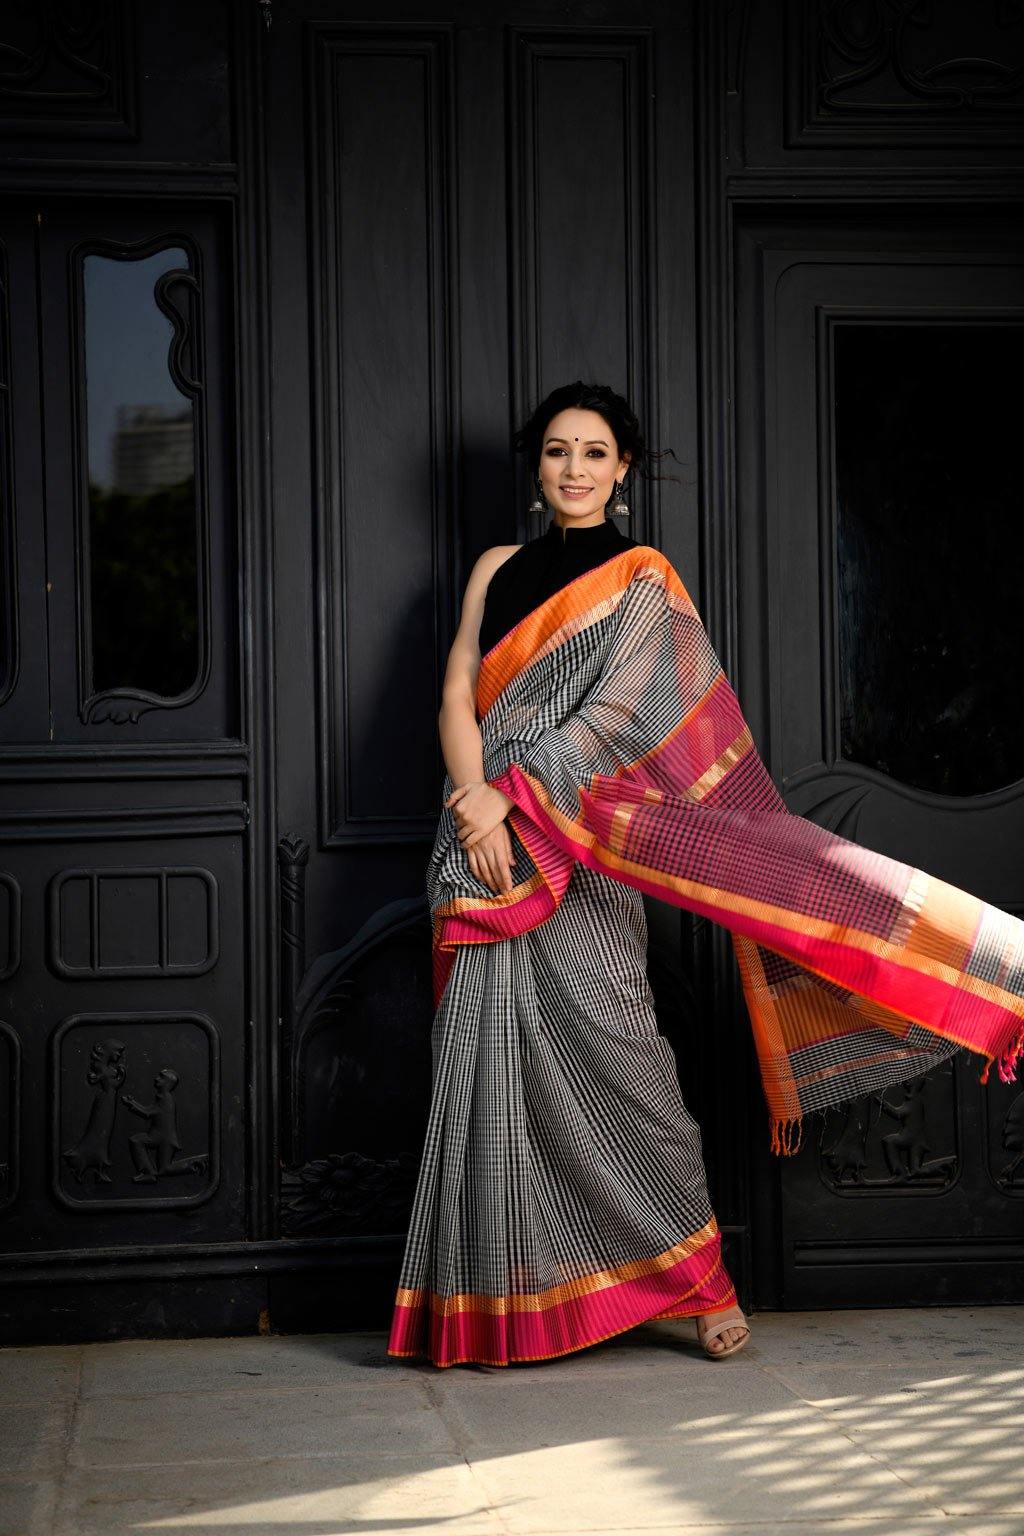 Narayanpet cotton saree |Motif border - Branded sarees